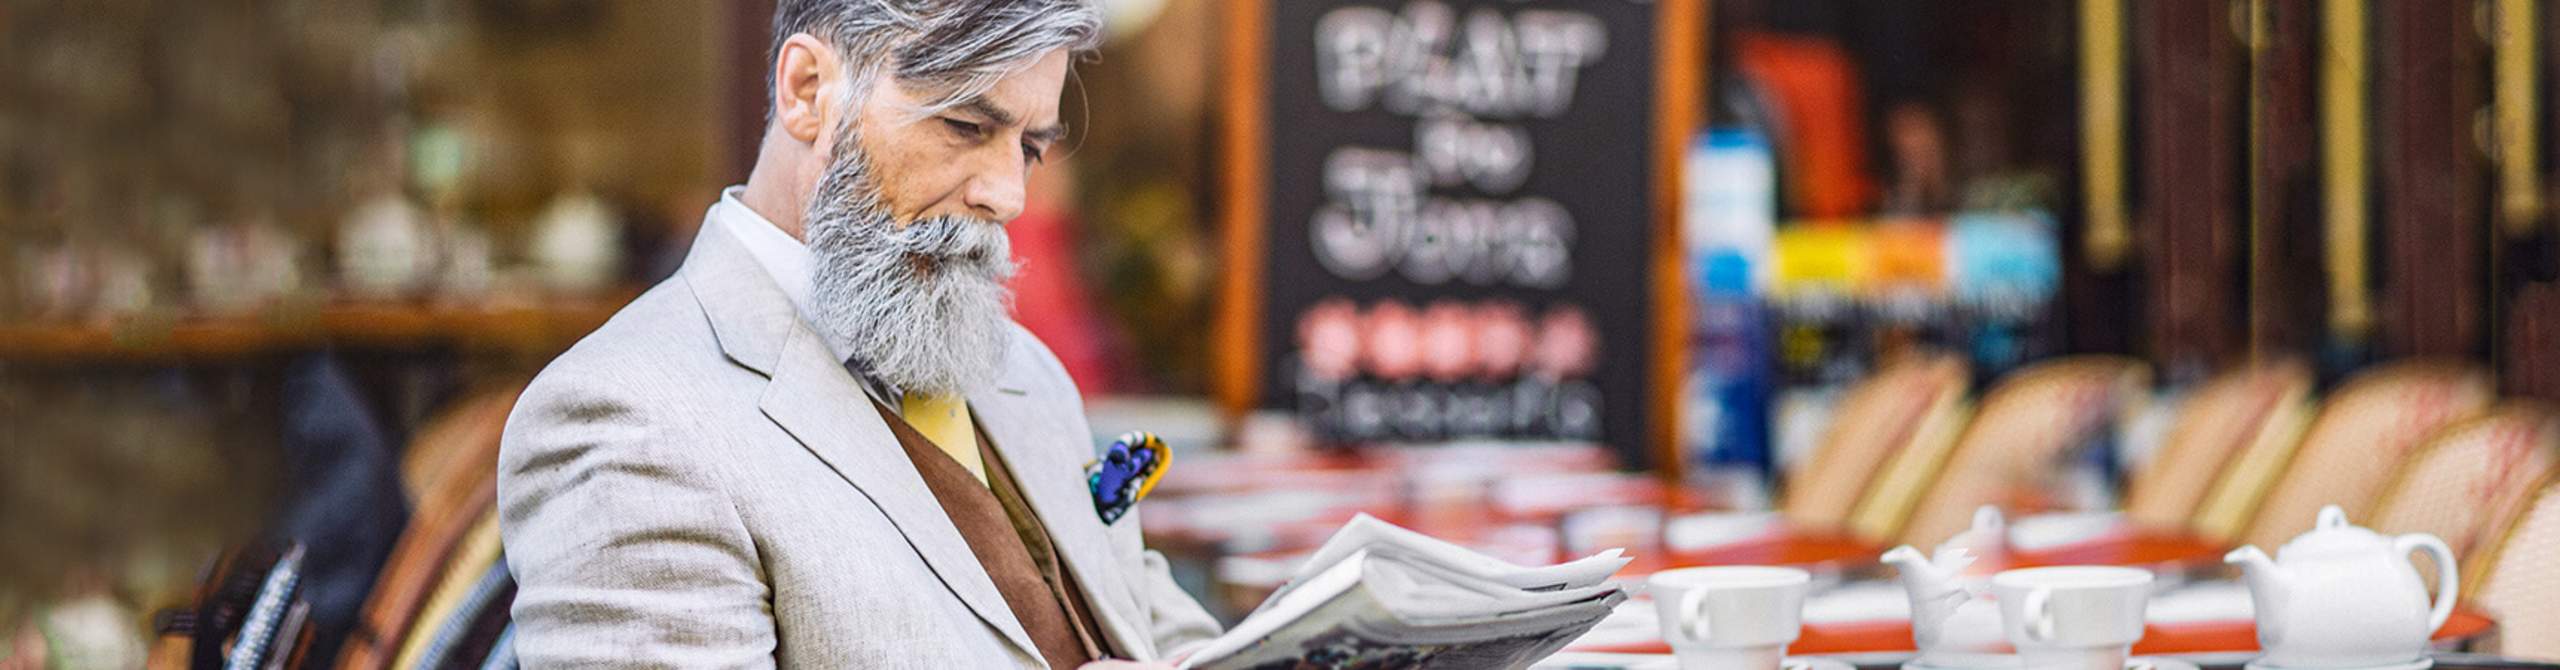 Mann sitzt in einem Cafe und liest Zeitung.